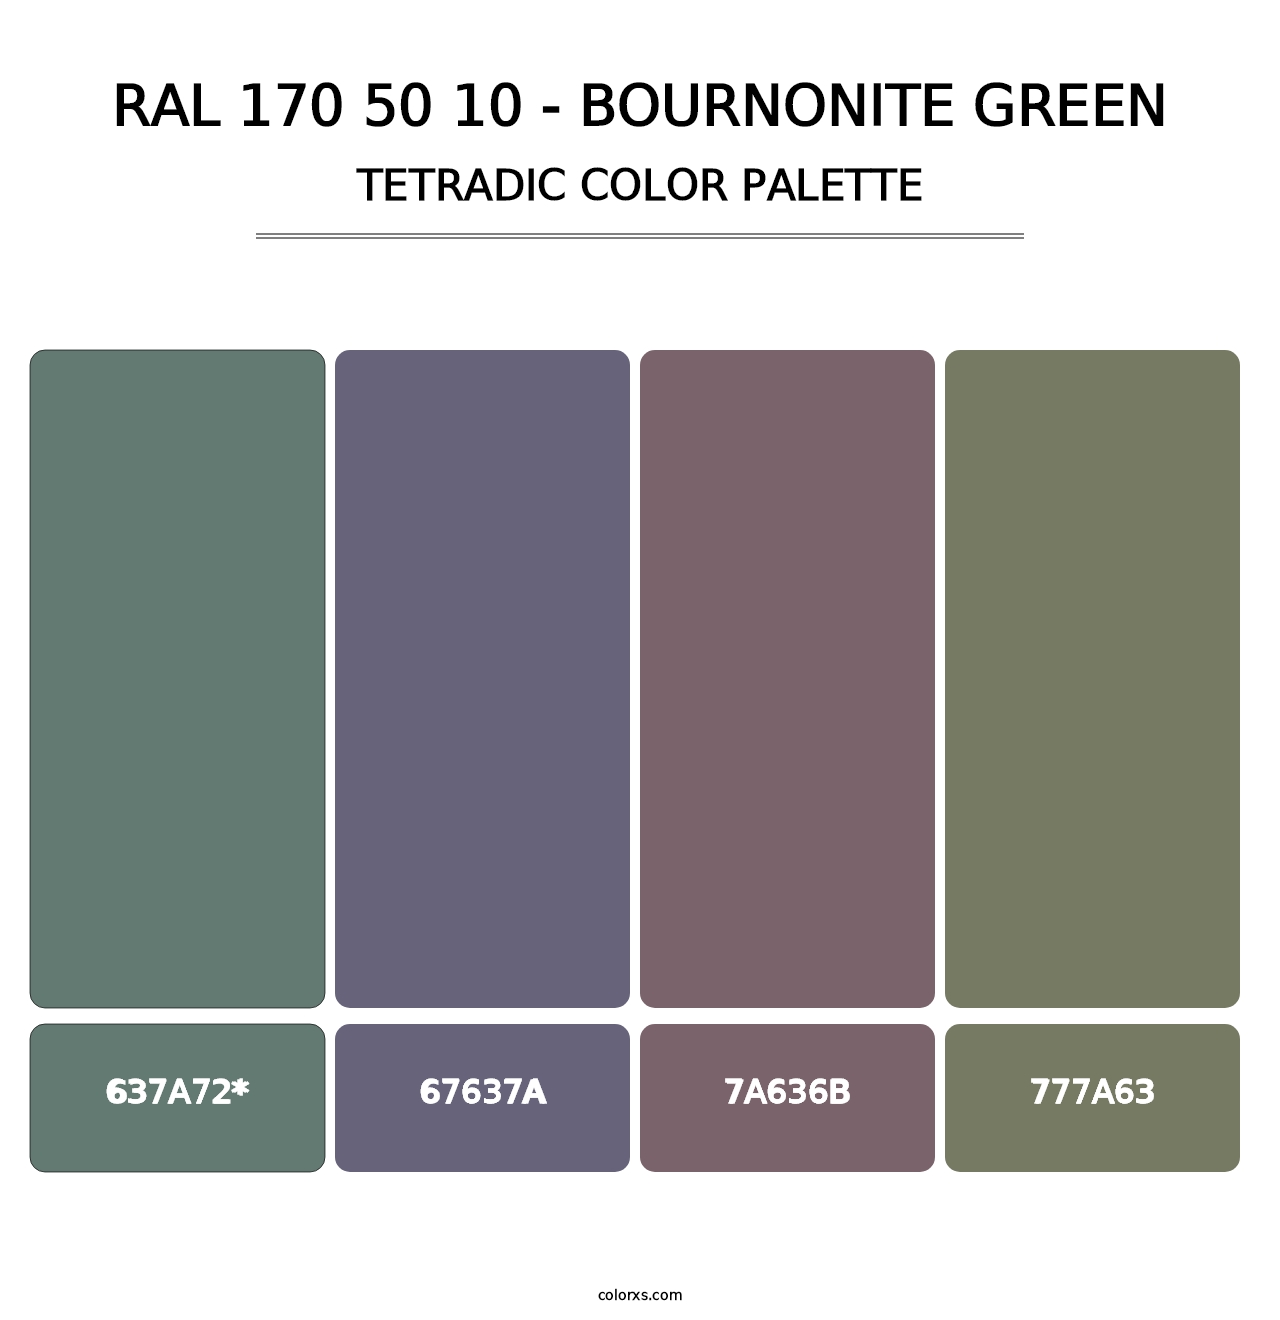 RAL 170 50 10 - Bournonite Green - Tetradic Color Palette